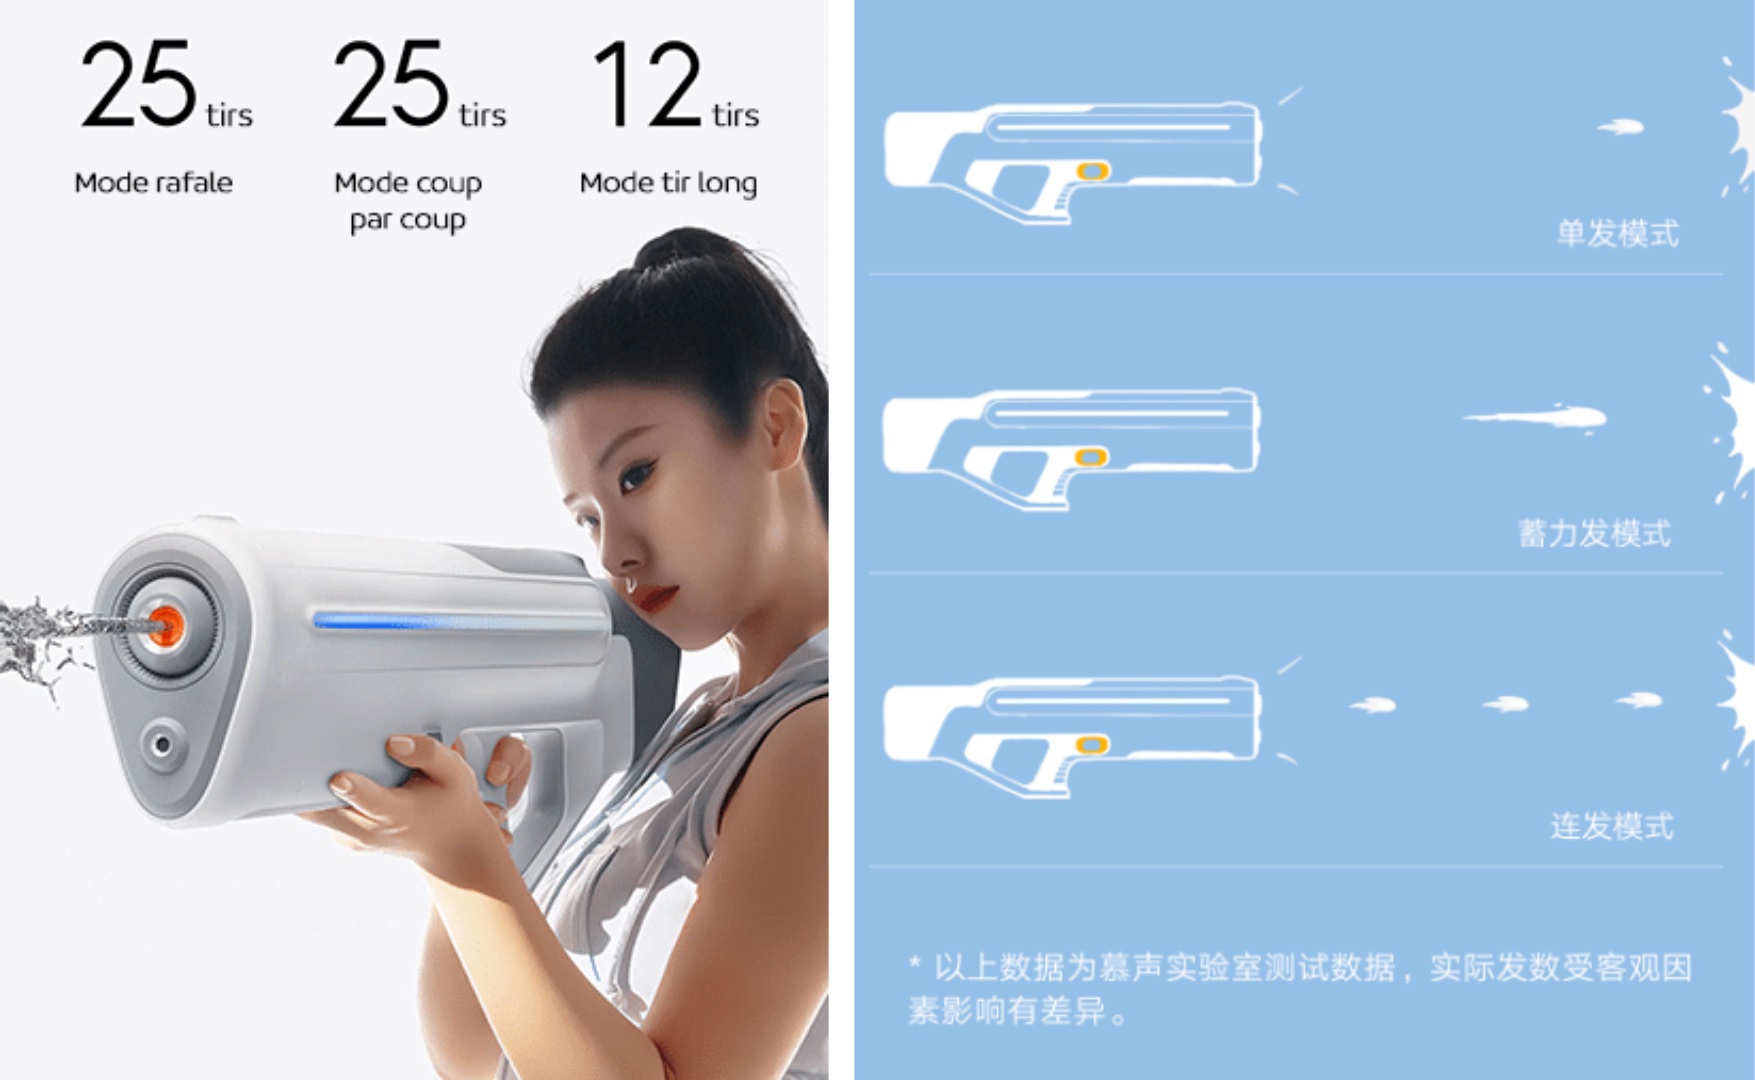 Xiaomi lance un pistolet à eau surpuissant (parce que pourquoi pas ?)